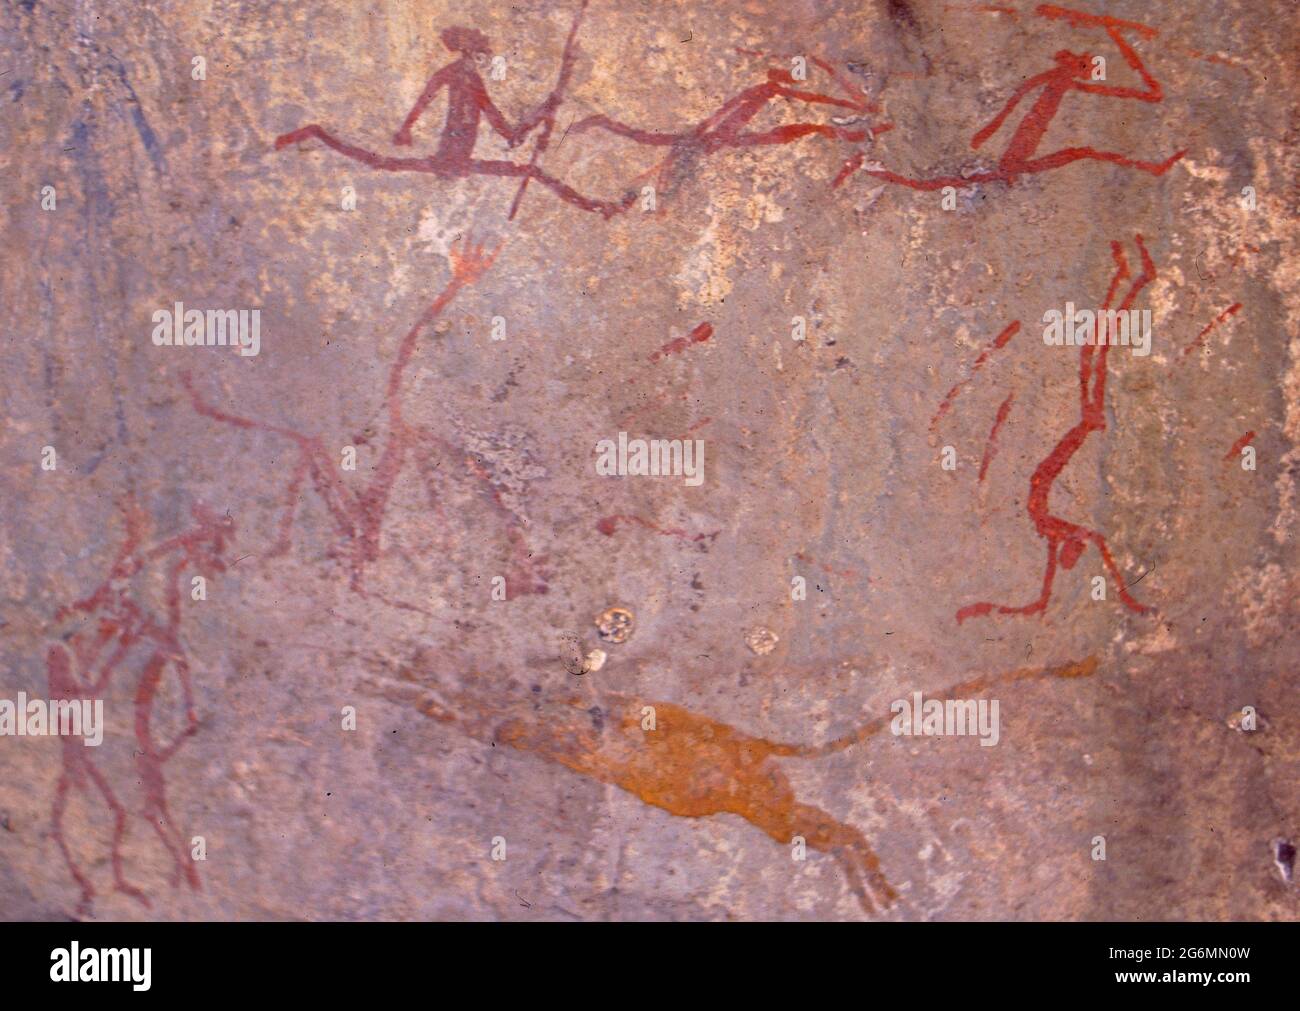 Botswana: The ancient bushmen stone paintings at Tsodillo Hills in the Central Kalahari Stock Photo